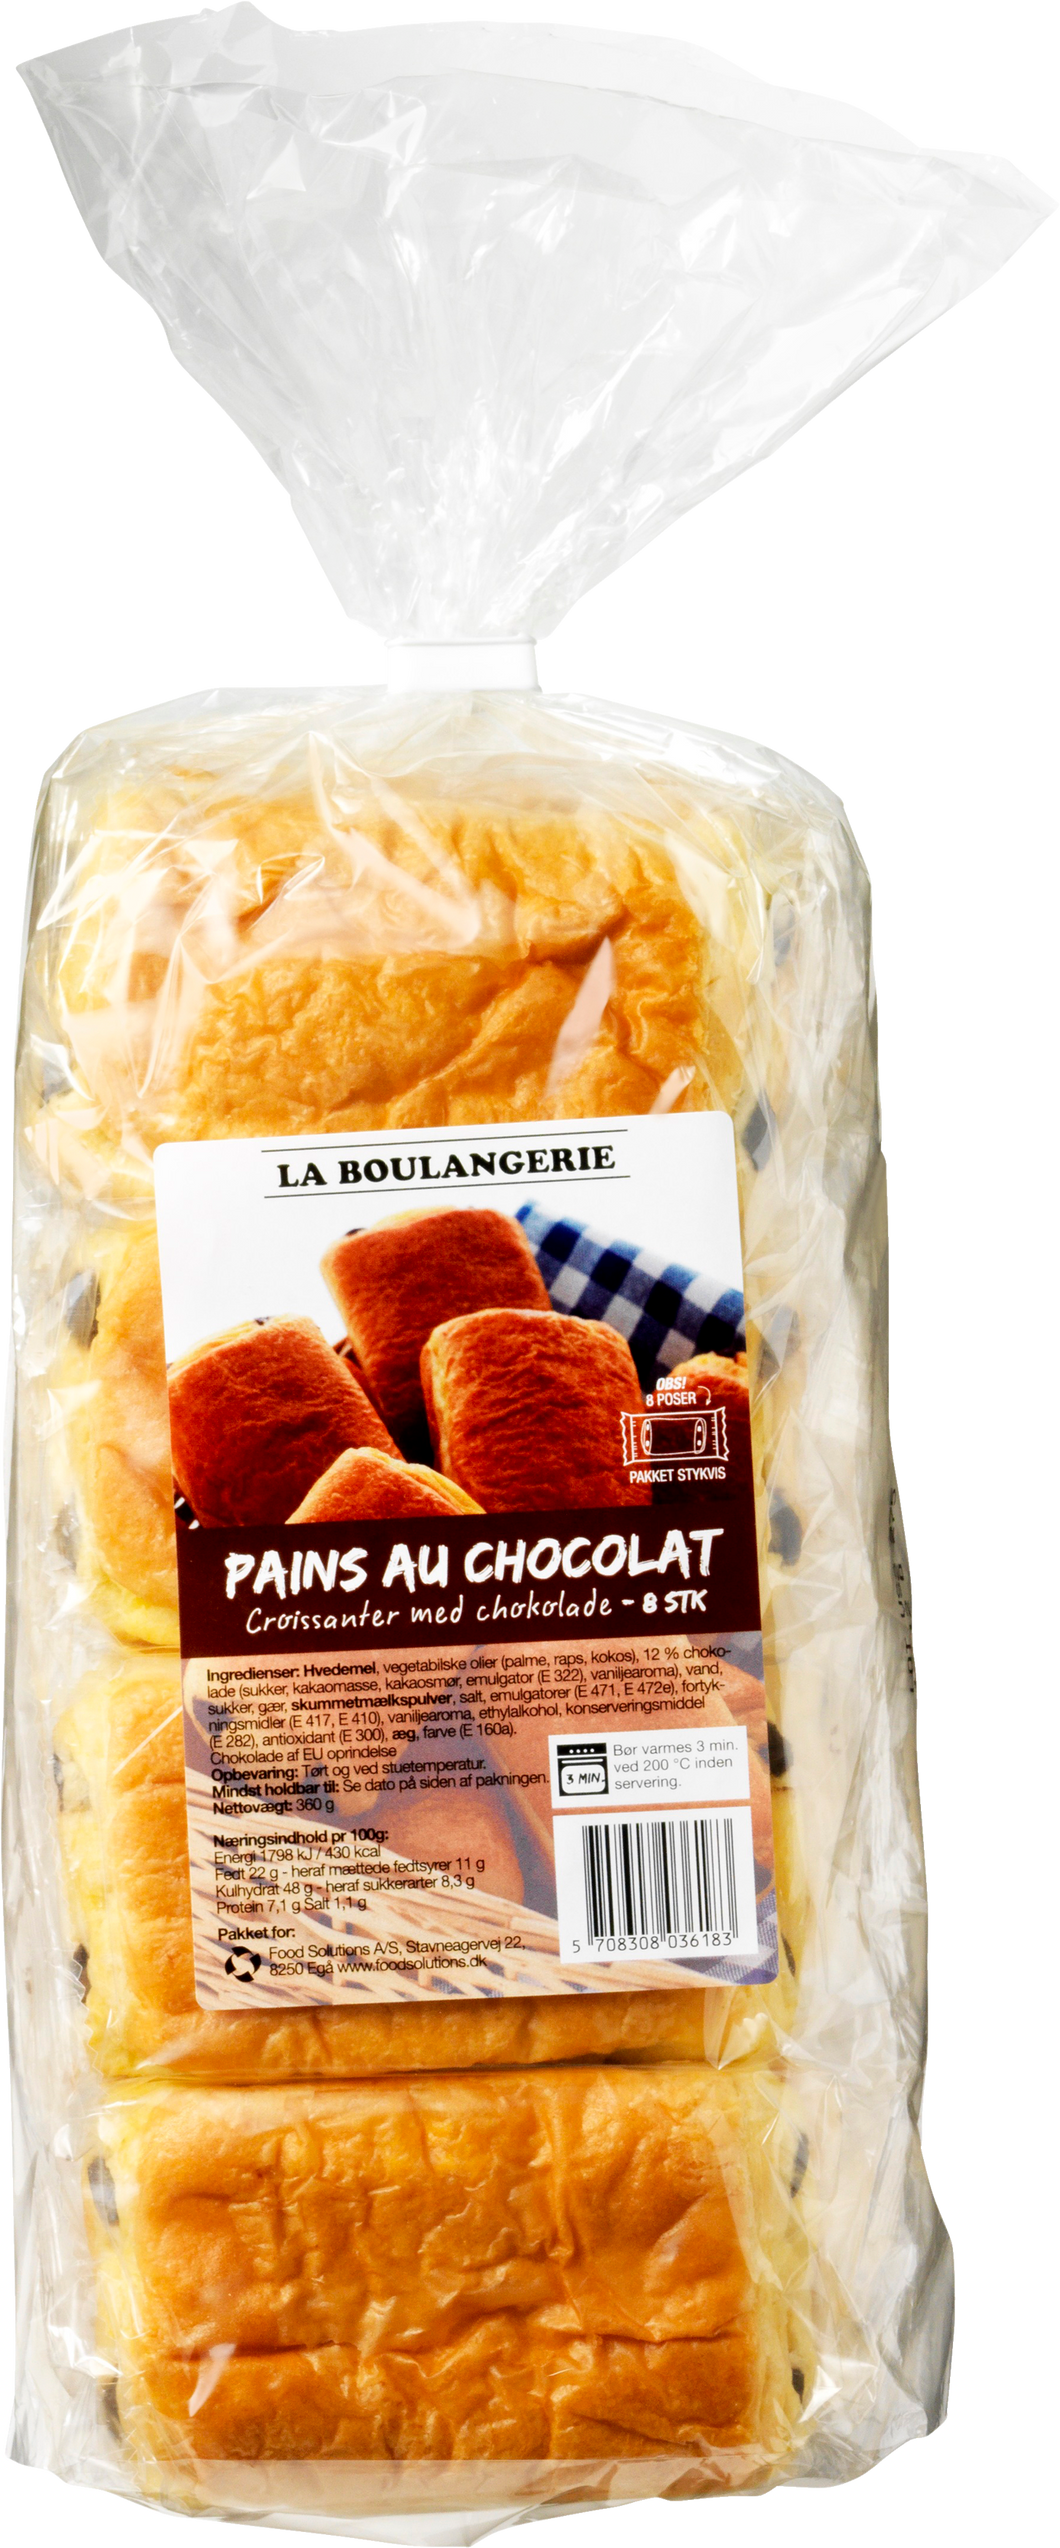 La Boulangerie - Pains au Chocolat - 8 pcs.